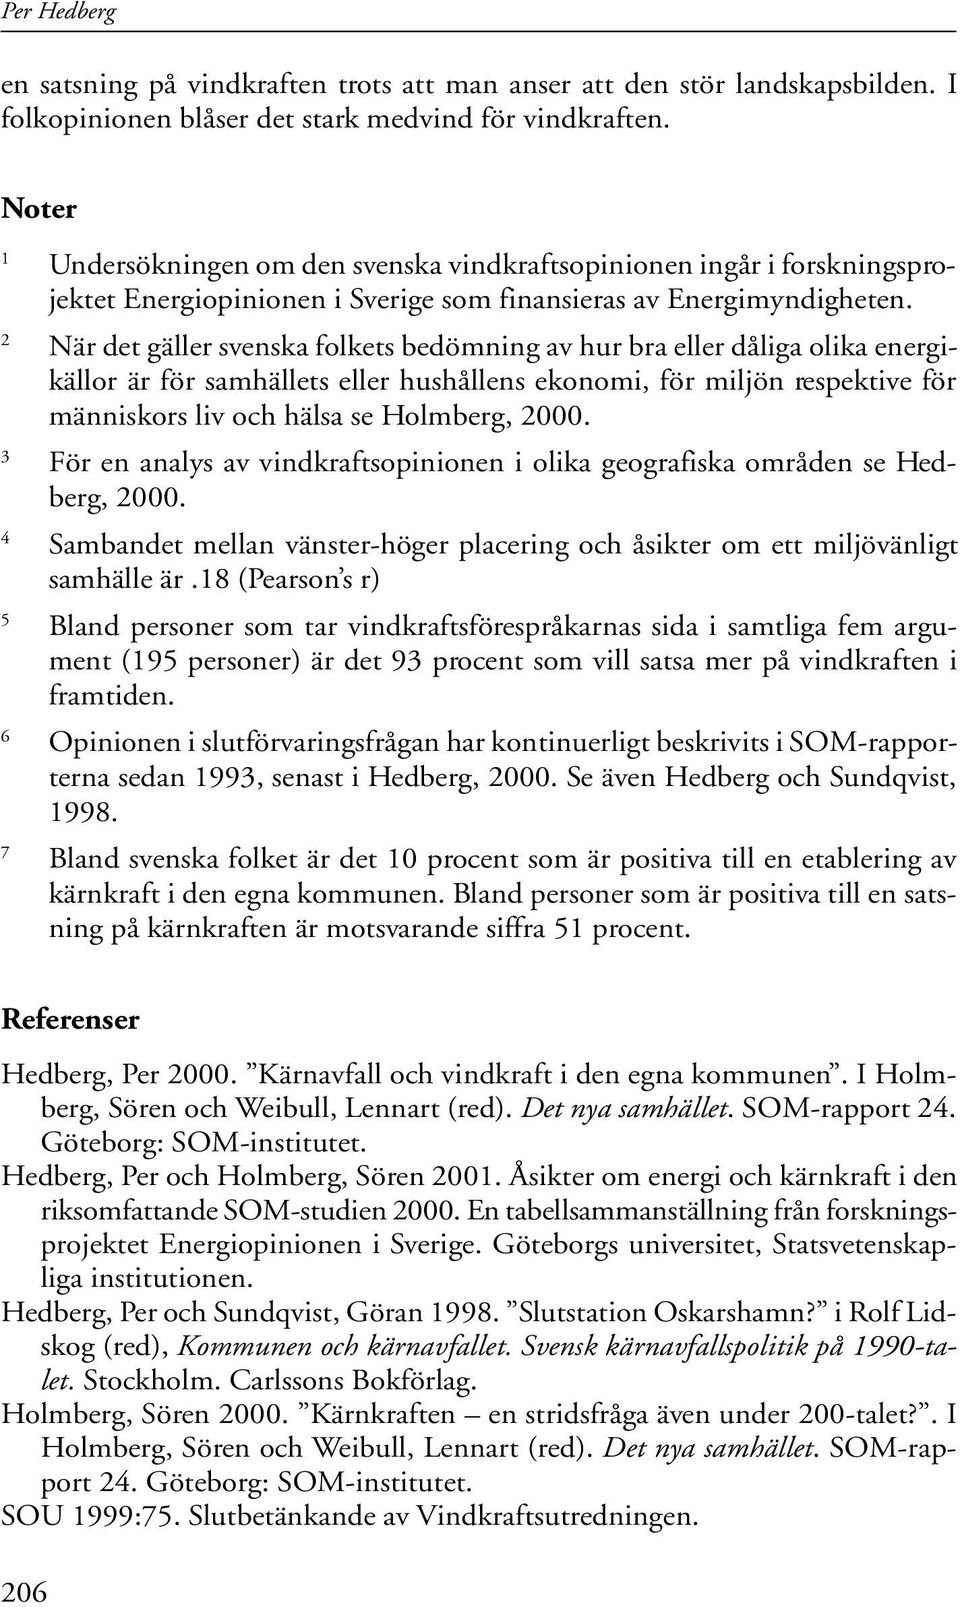 2 När det gäller svenska folkets bedömning av hur bra eller dåliga olika energikällor är för samhällets eller hushållens ekonomi, för miljön respektive för människors liv och hälsa se Holmberg, 2000.